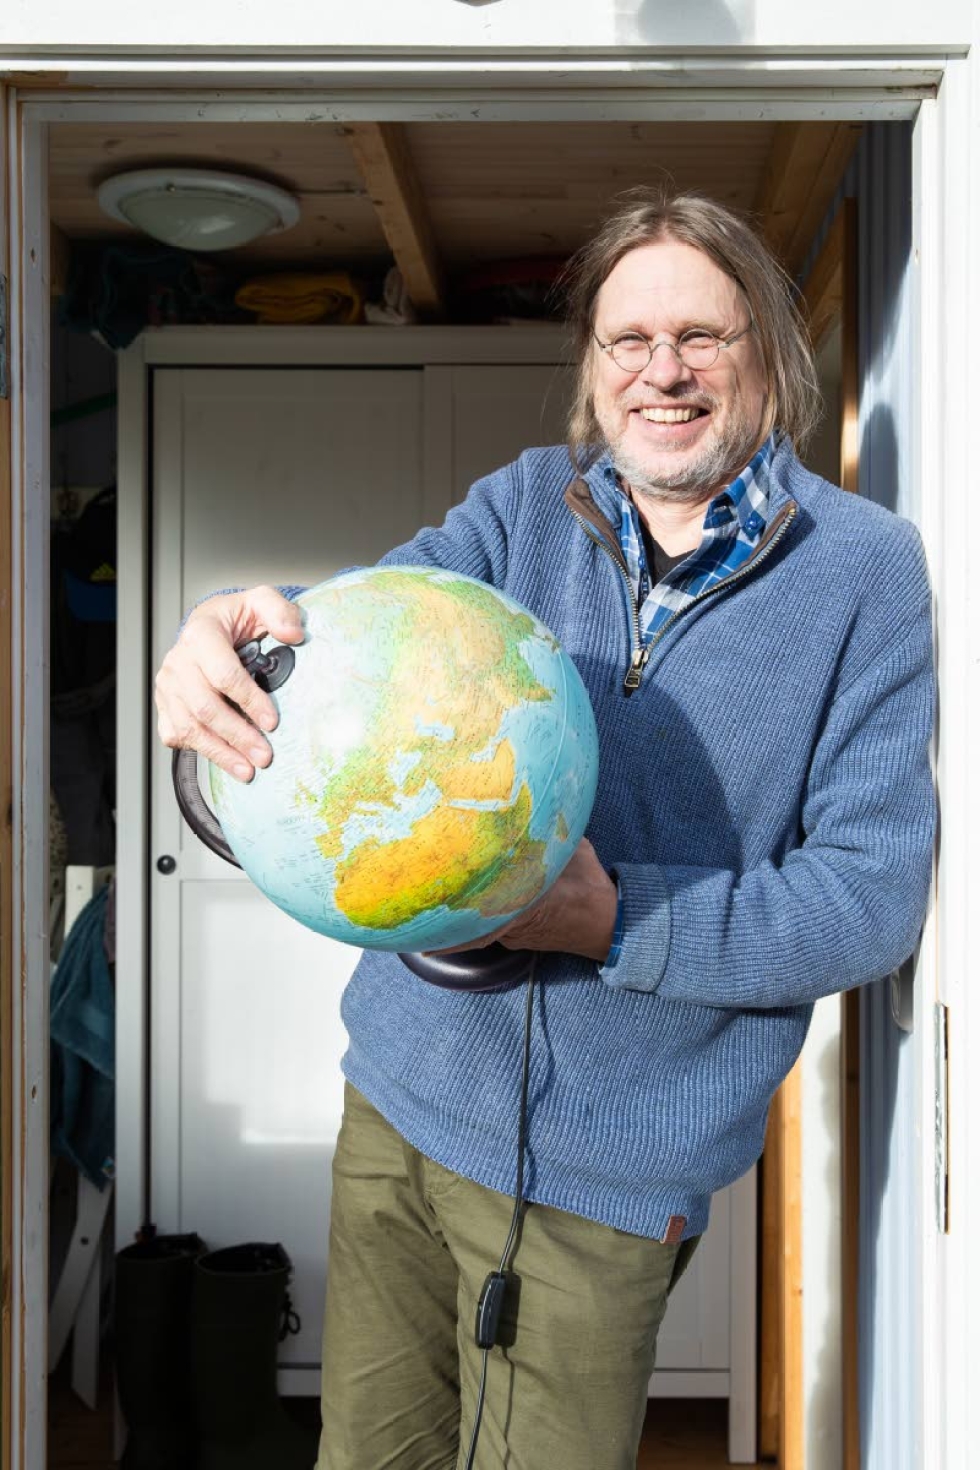 Ari Lehtisen karttapallo on pyöreä, vaikka maapallo onkin ellipsoidi.